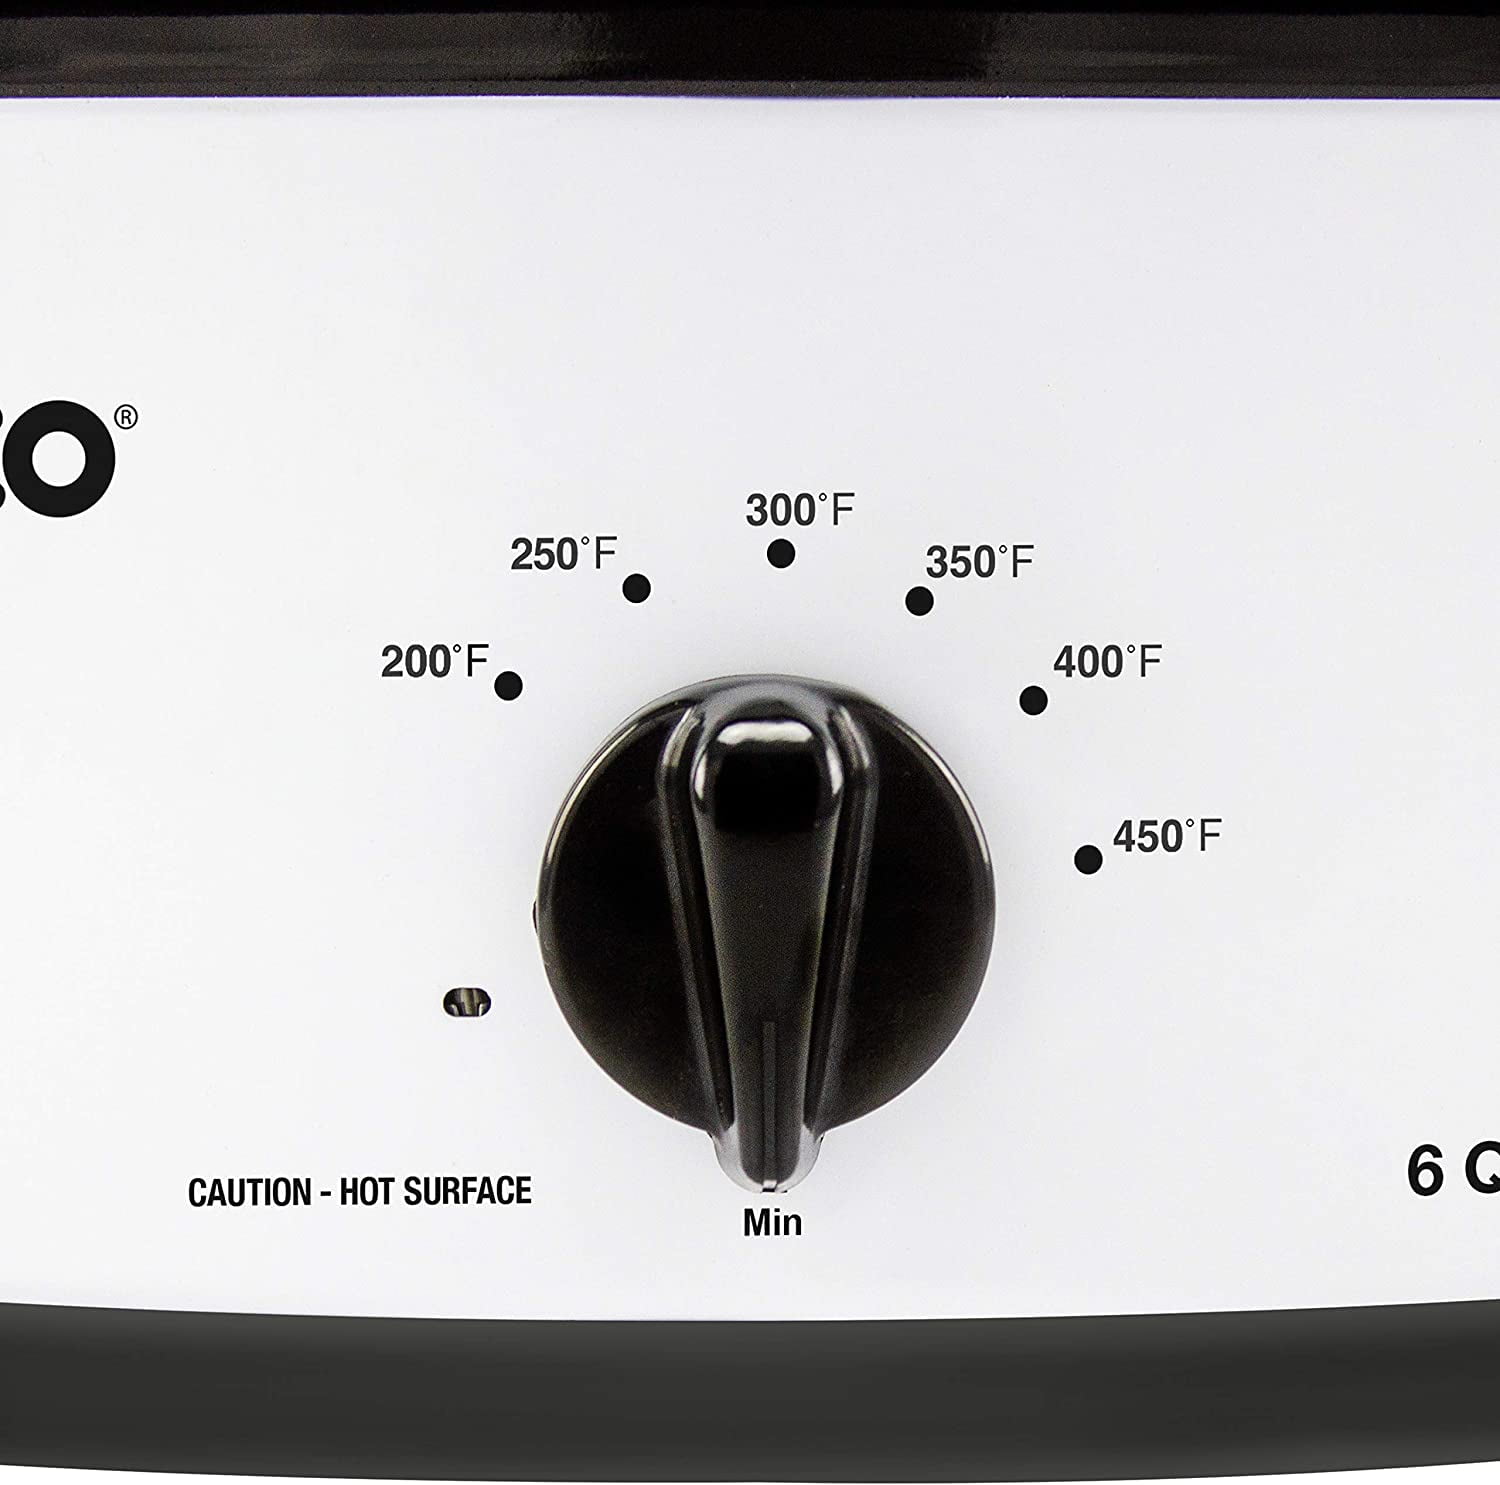 Nesco 4818-12 Nesco 1425-watt, 18-quart professional porcelain roaster oven  with red finish 